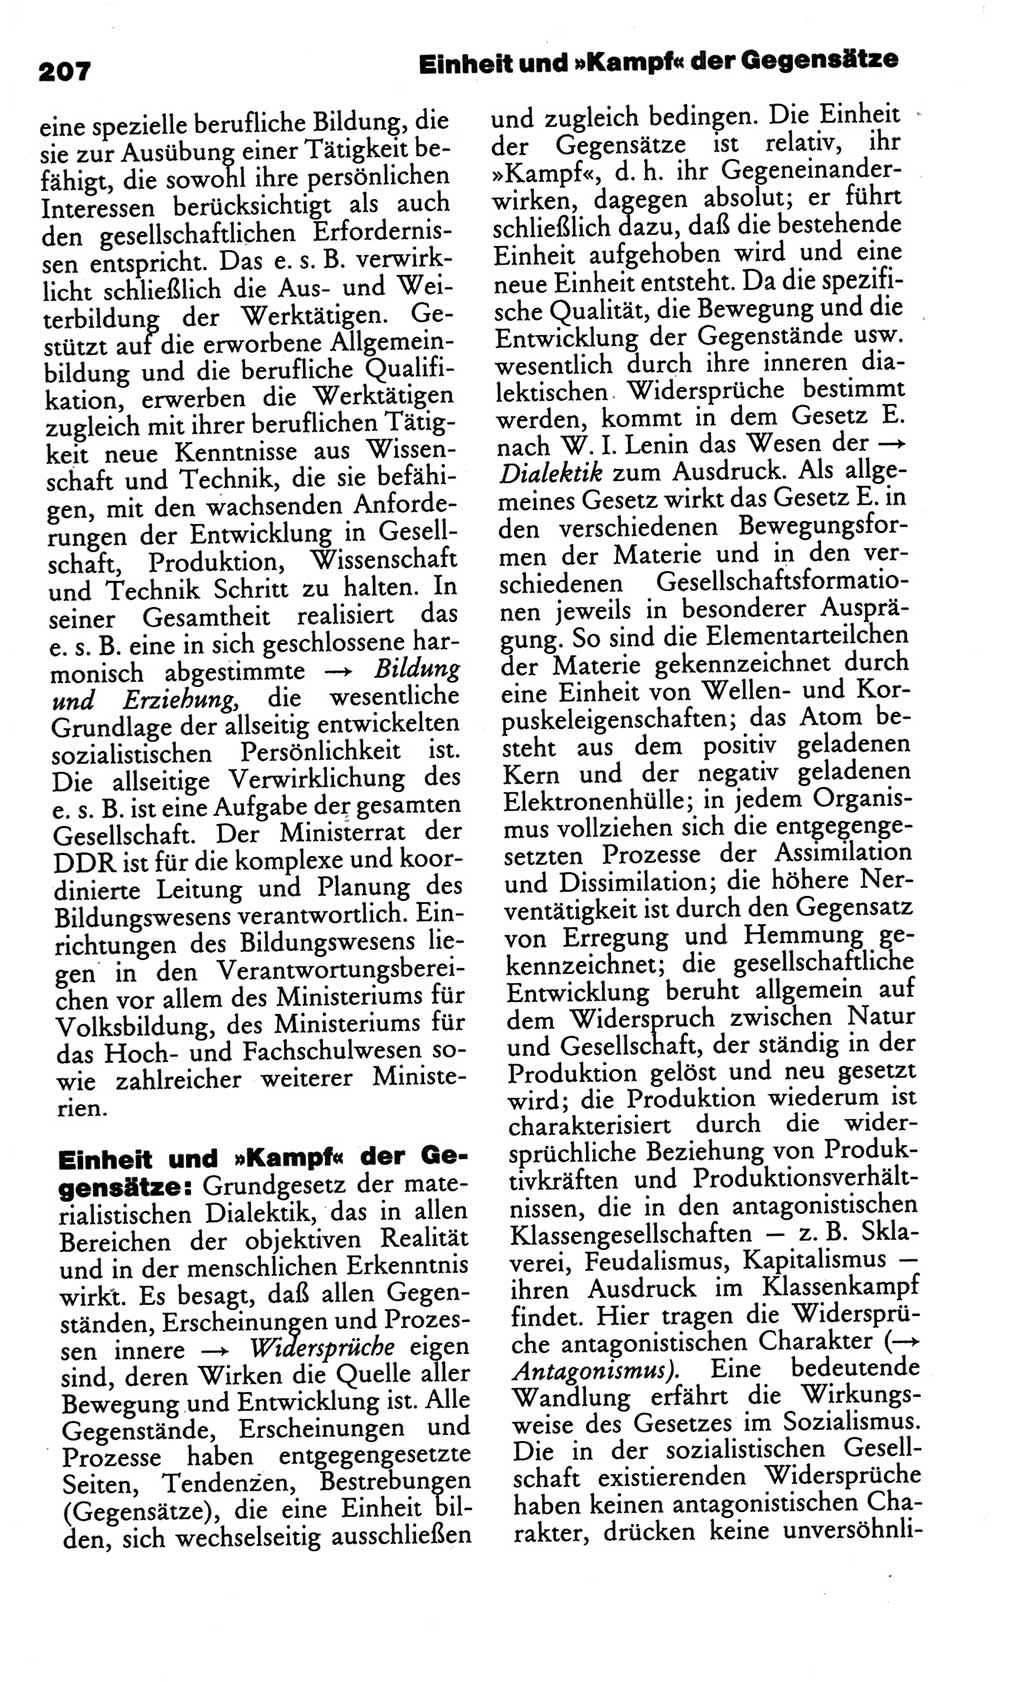 Kleines politisches Wörterbuch [Deutsche Demokratische Republik (DDR)] 1986, Seite 207 (Kl. pol. Wb. DDR 1986, S. 207)